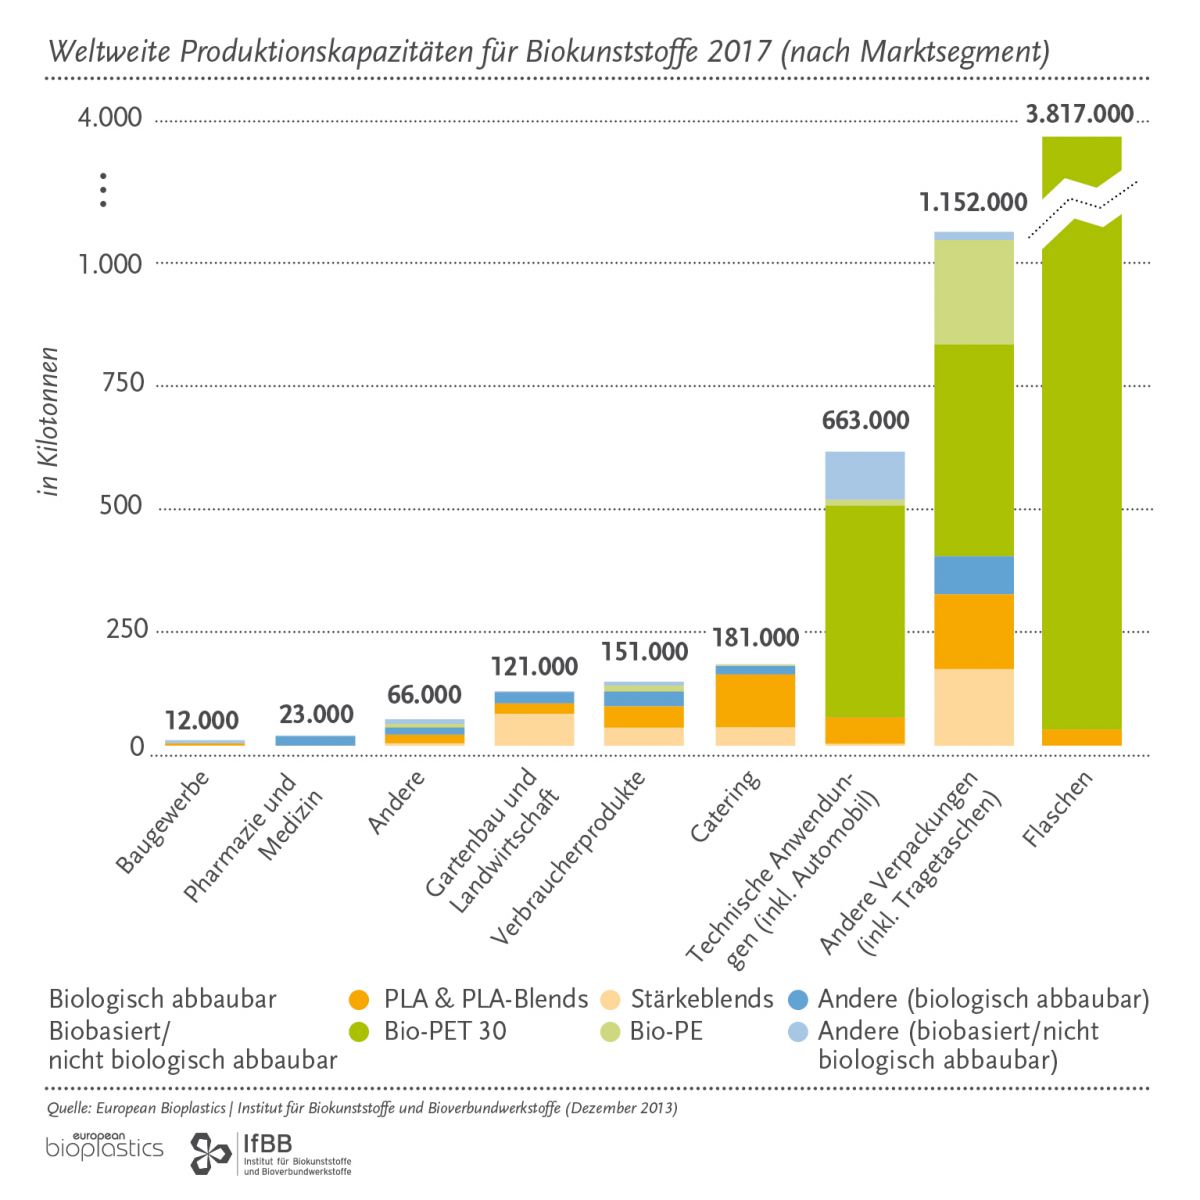 Das Schaubild prognostiziert die gestiegene Produktionskapazität für Biokunststoffe im Jahr 2017, aufgeschlüsselt nach verschiedenen Marktsegmenten und Biokunststoffarten.